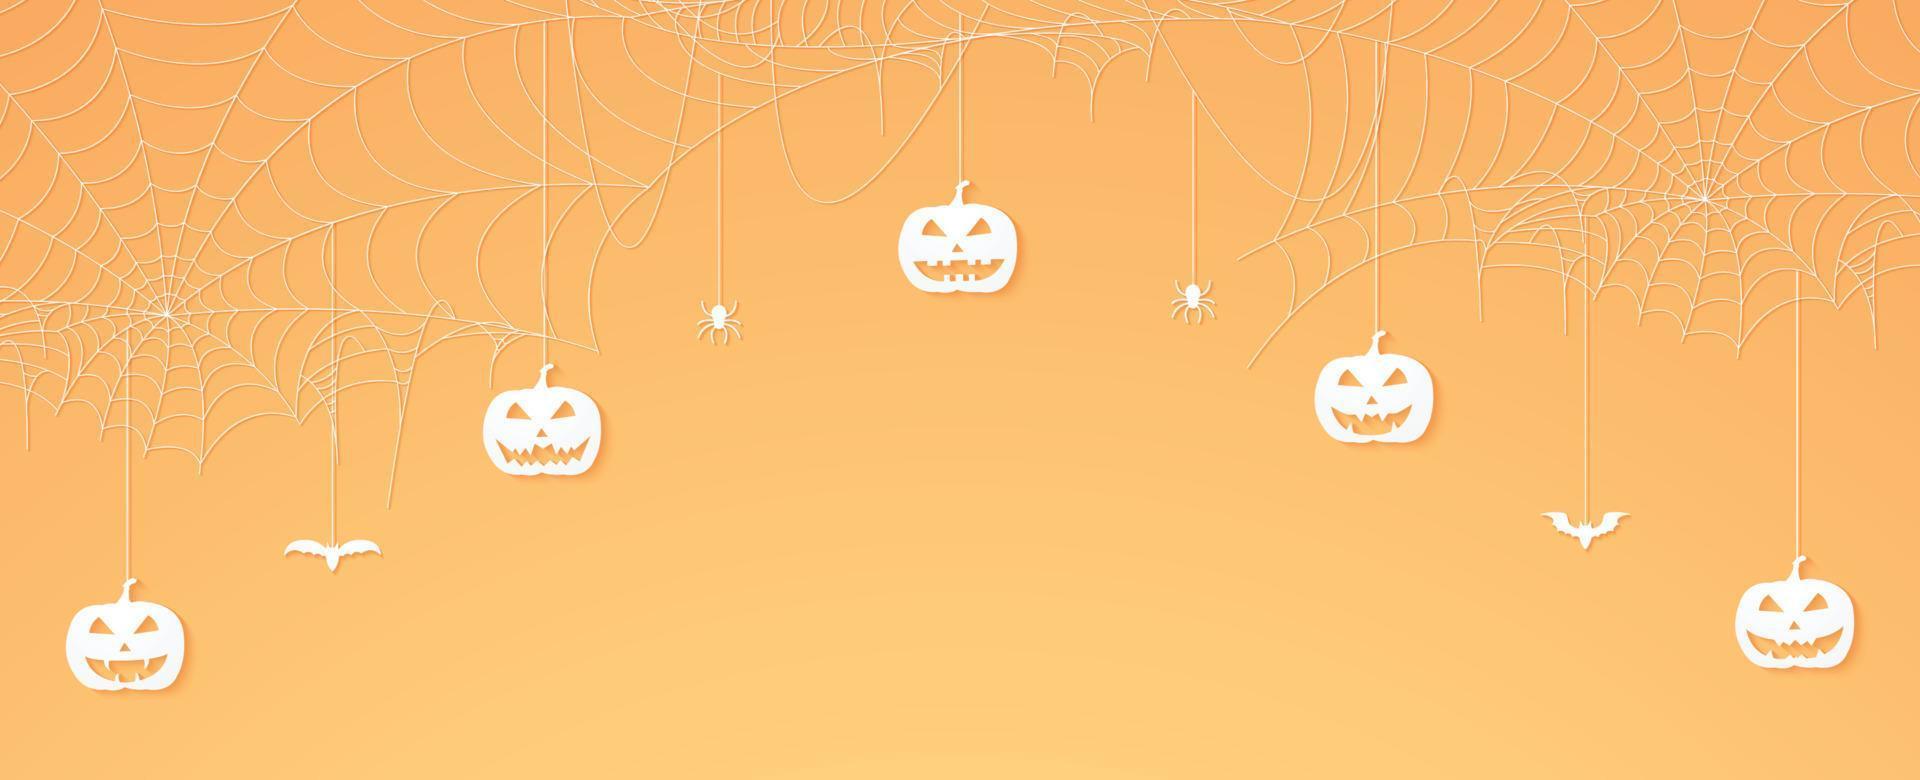 halloween pumpahuvud, spindlar och fladdermöss som hänger, spindelnätbanner, spindelnätbakgrund, kopieringsutrymme vektor